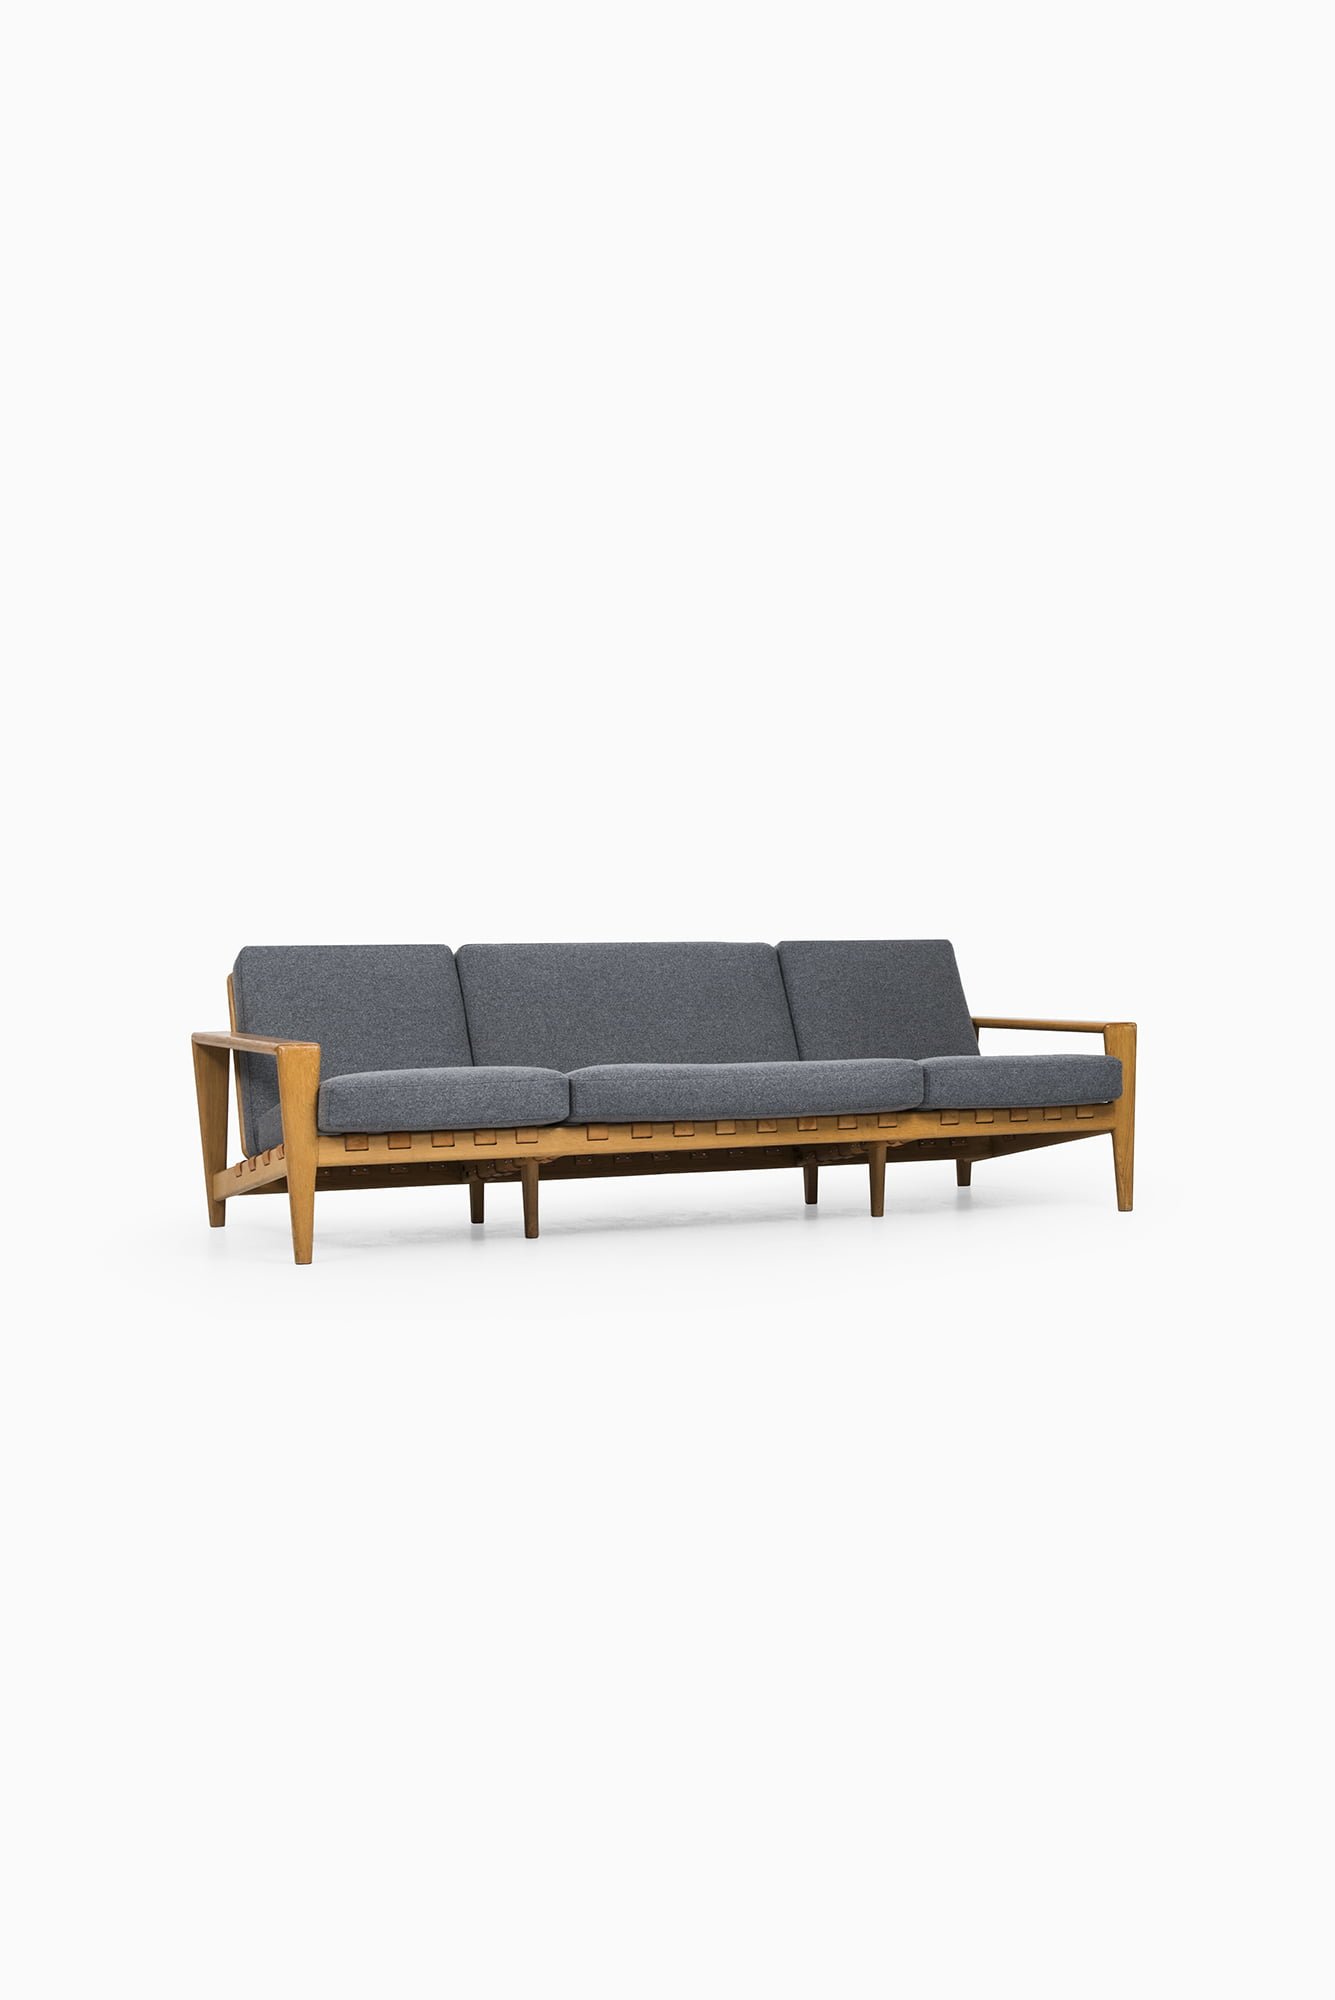 Svante Skogh sofa by Seffle Möbelfabrik at Studio Schalling